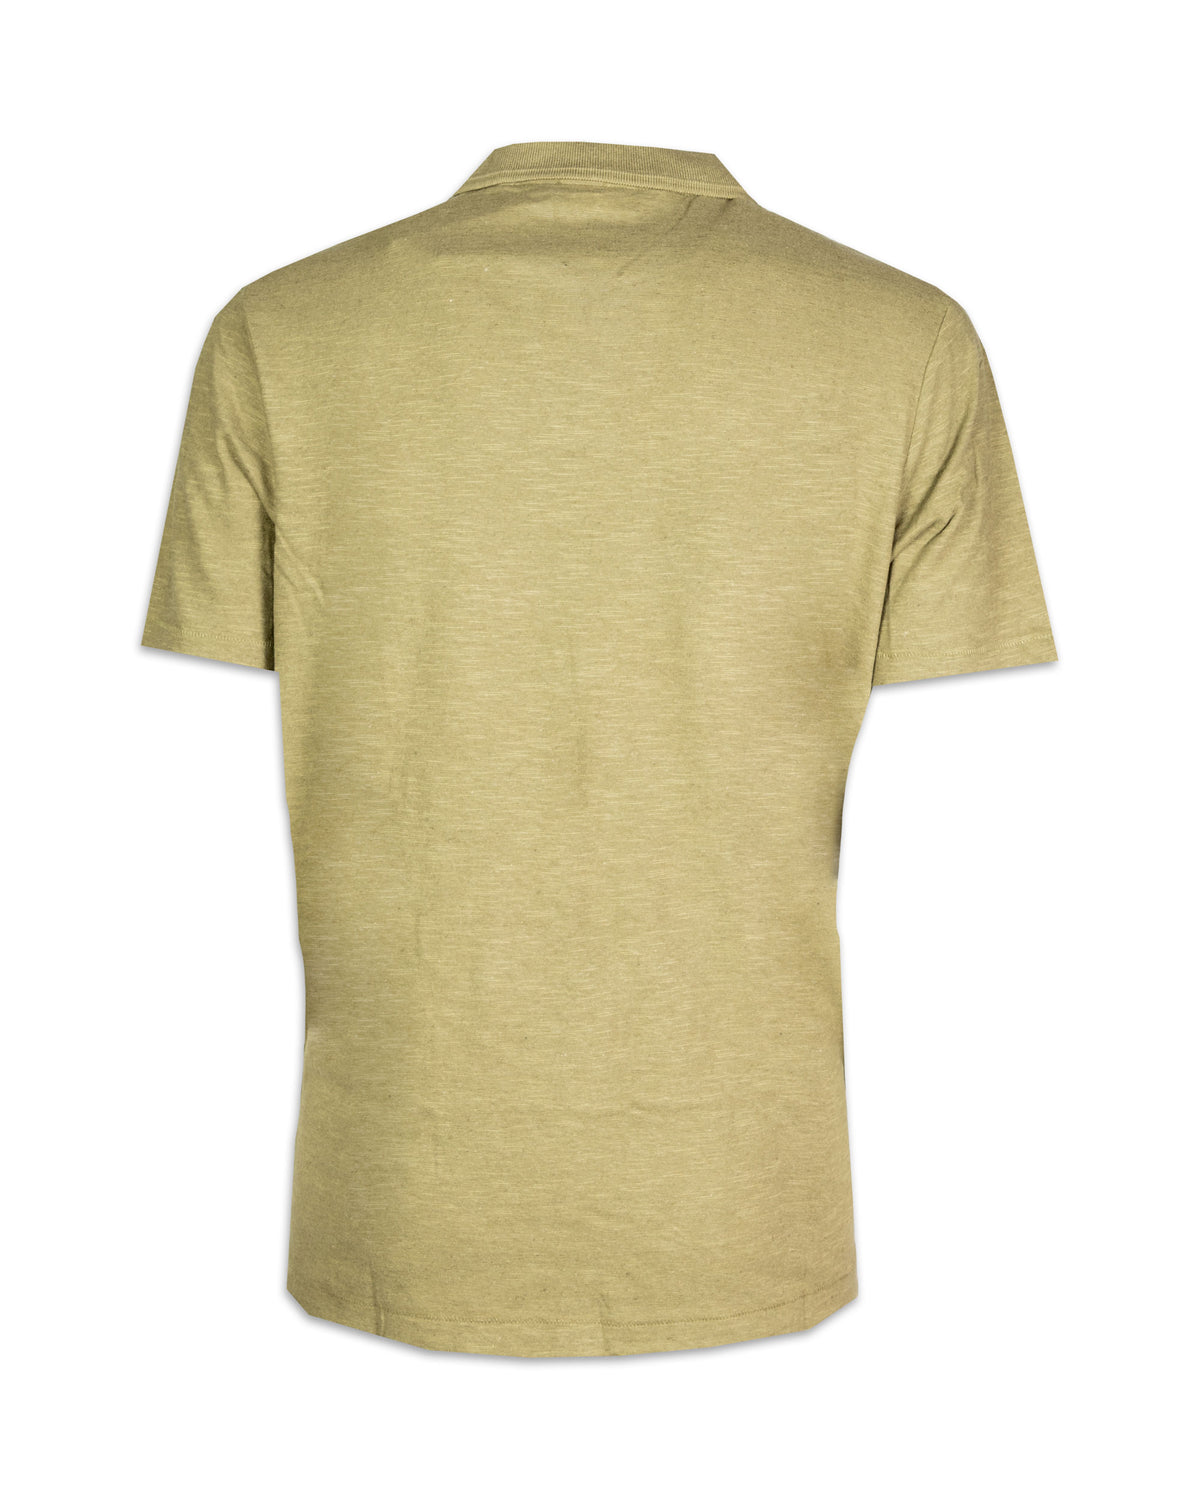 Man Polo Shirt Calvin Klein Cotton Linen Open Collar Delta Green